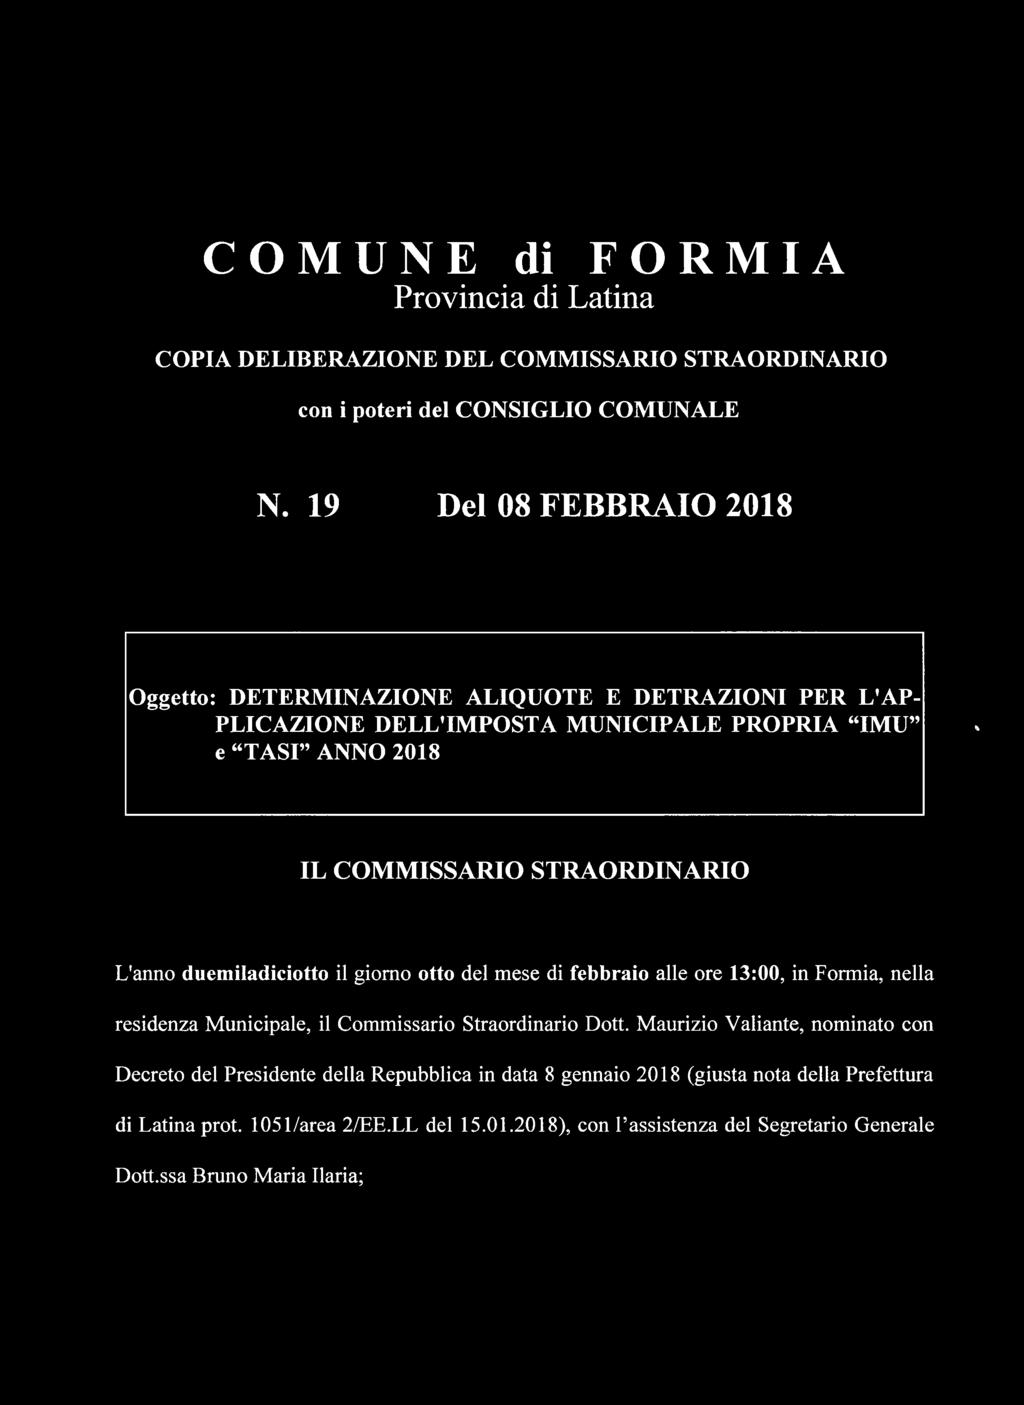 STRAORDINARIO L'anno duemiladiciotto il giorno otto del mese di febbraio alle ore 13:00, in Formia, nella residenza Municipale, il Commissario Straordinario Dott.